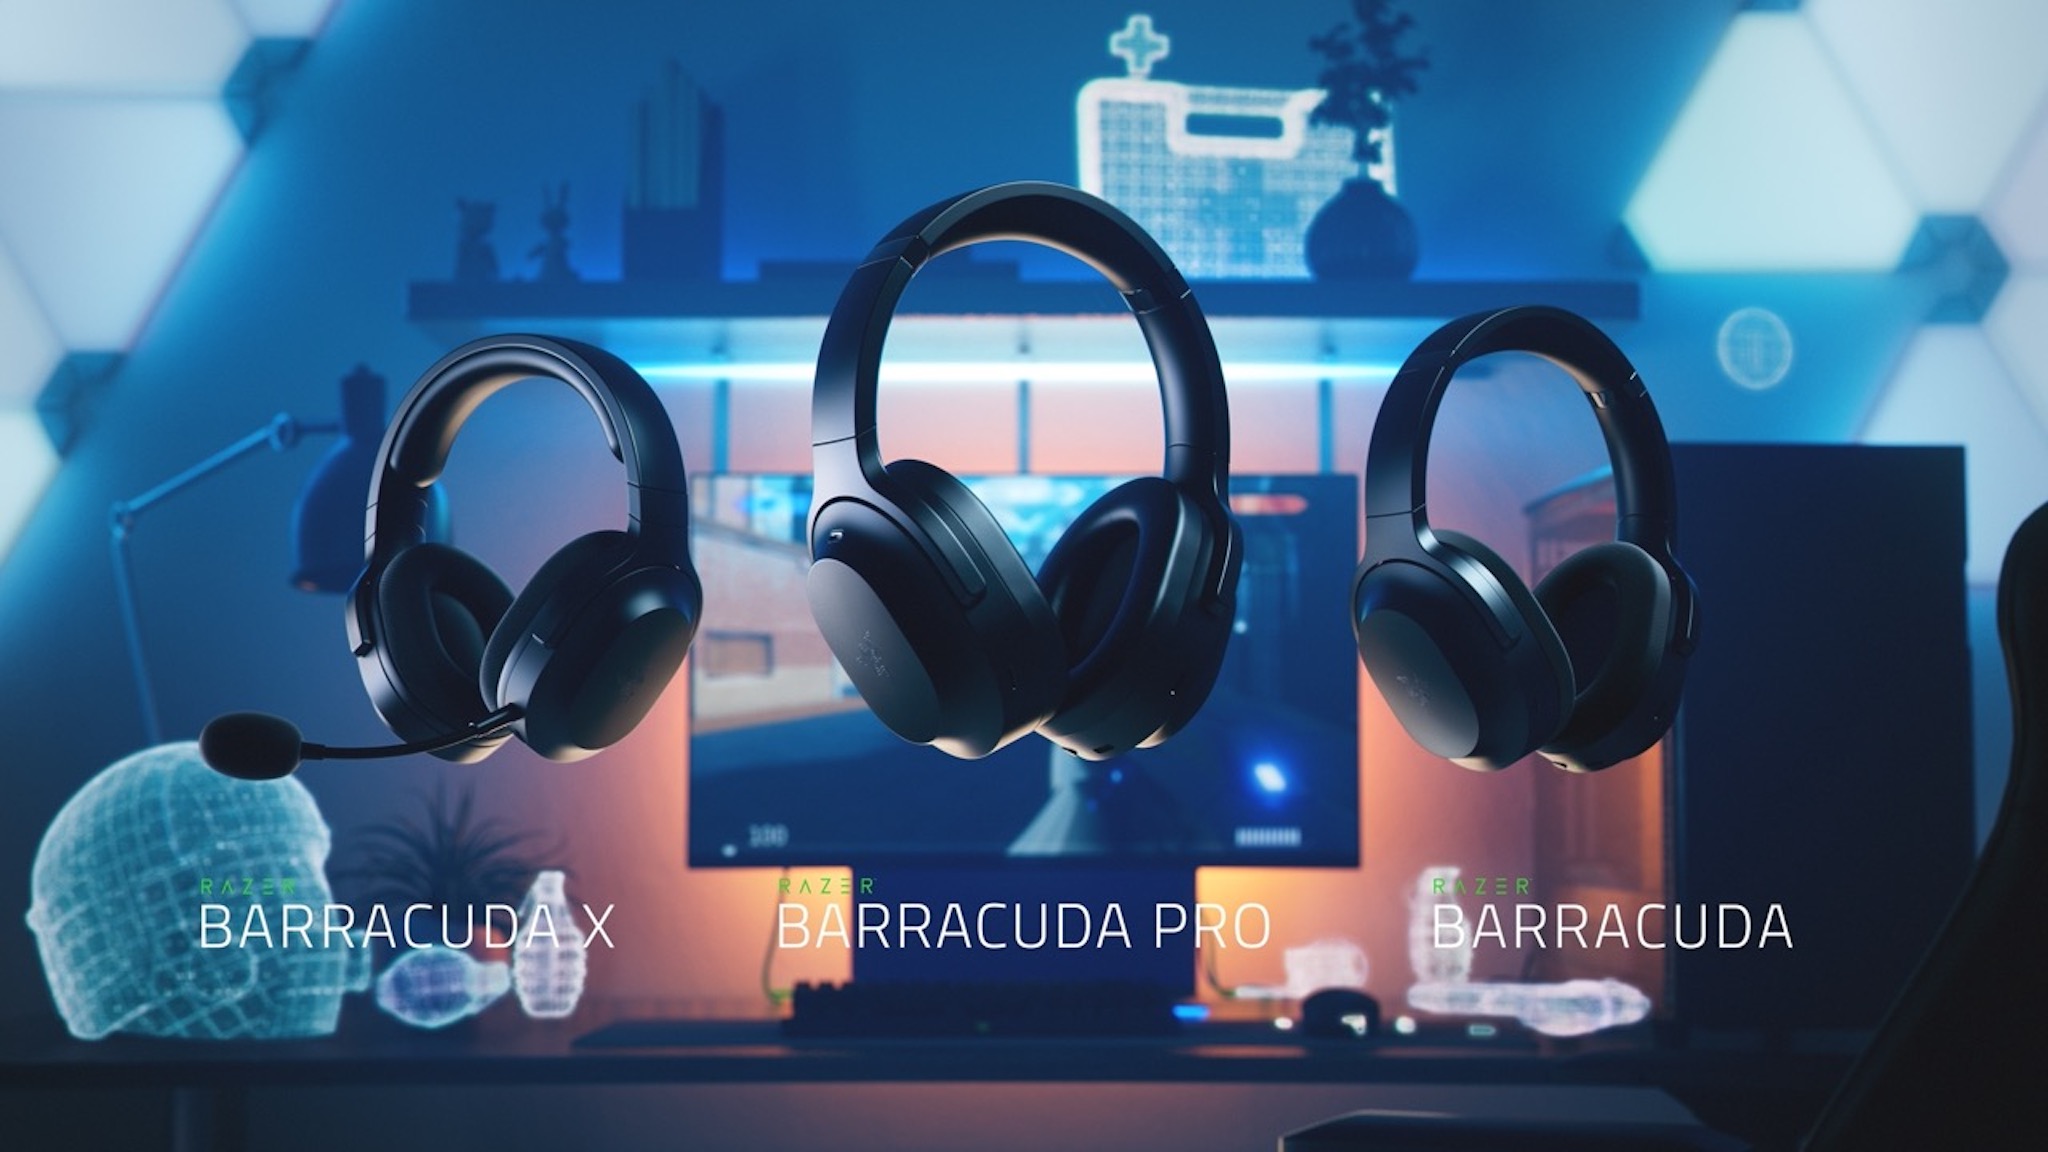 RΛZΞR ra mắt tai nghe Barracuda mới: chống ồn chủ động, SmartSwitch, driver 50mm, giá từ 100 USD